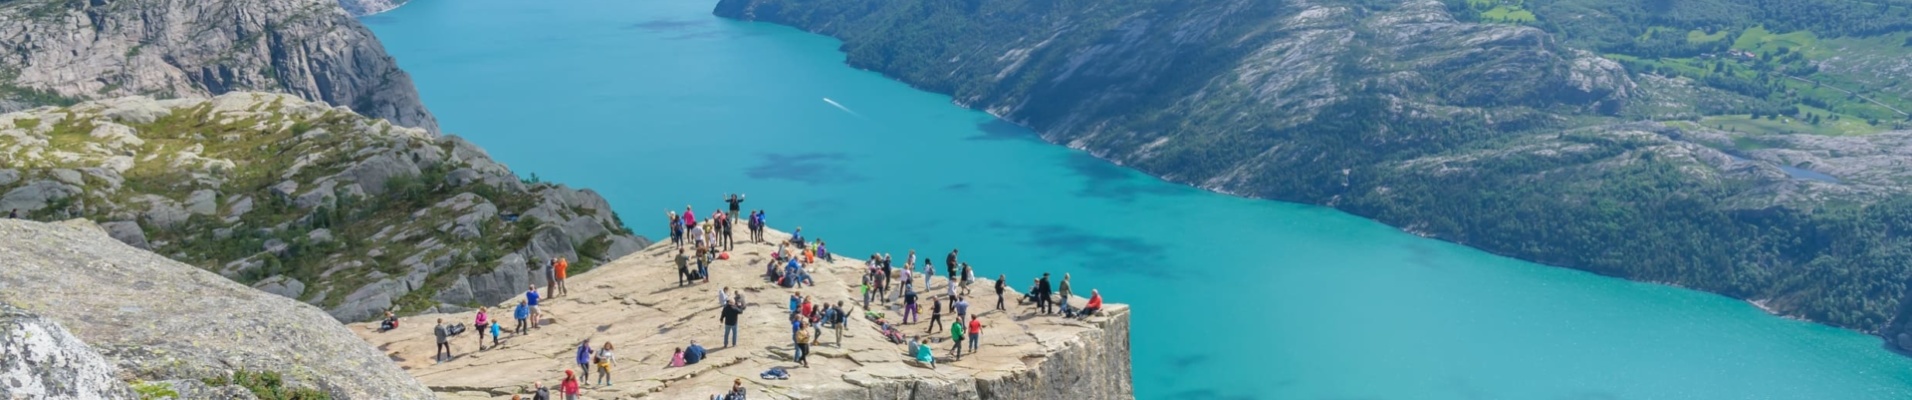 Vue de la célèbre falaise de Preikestolen en Norvège